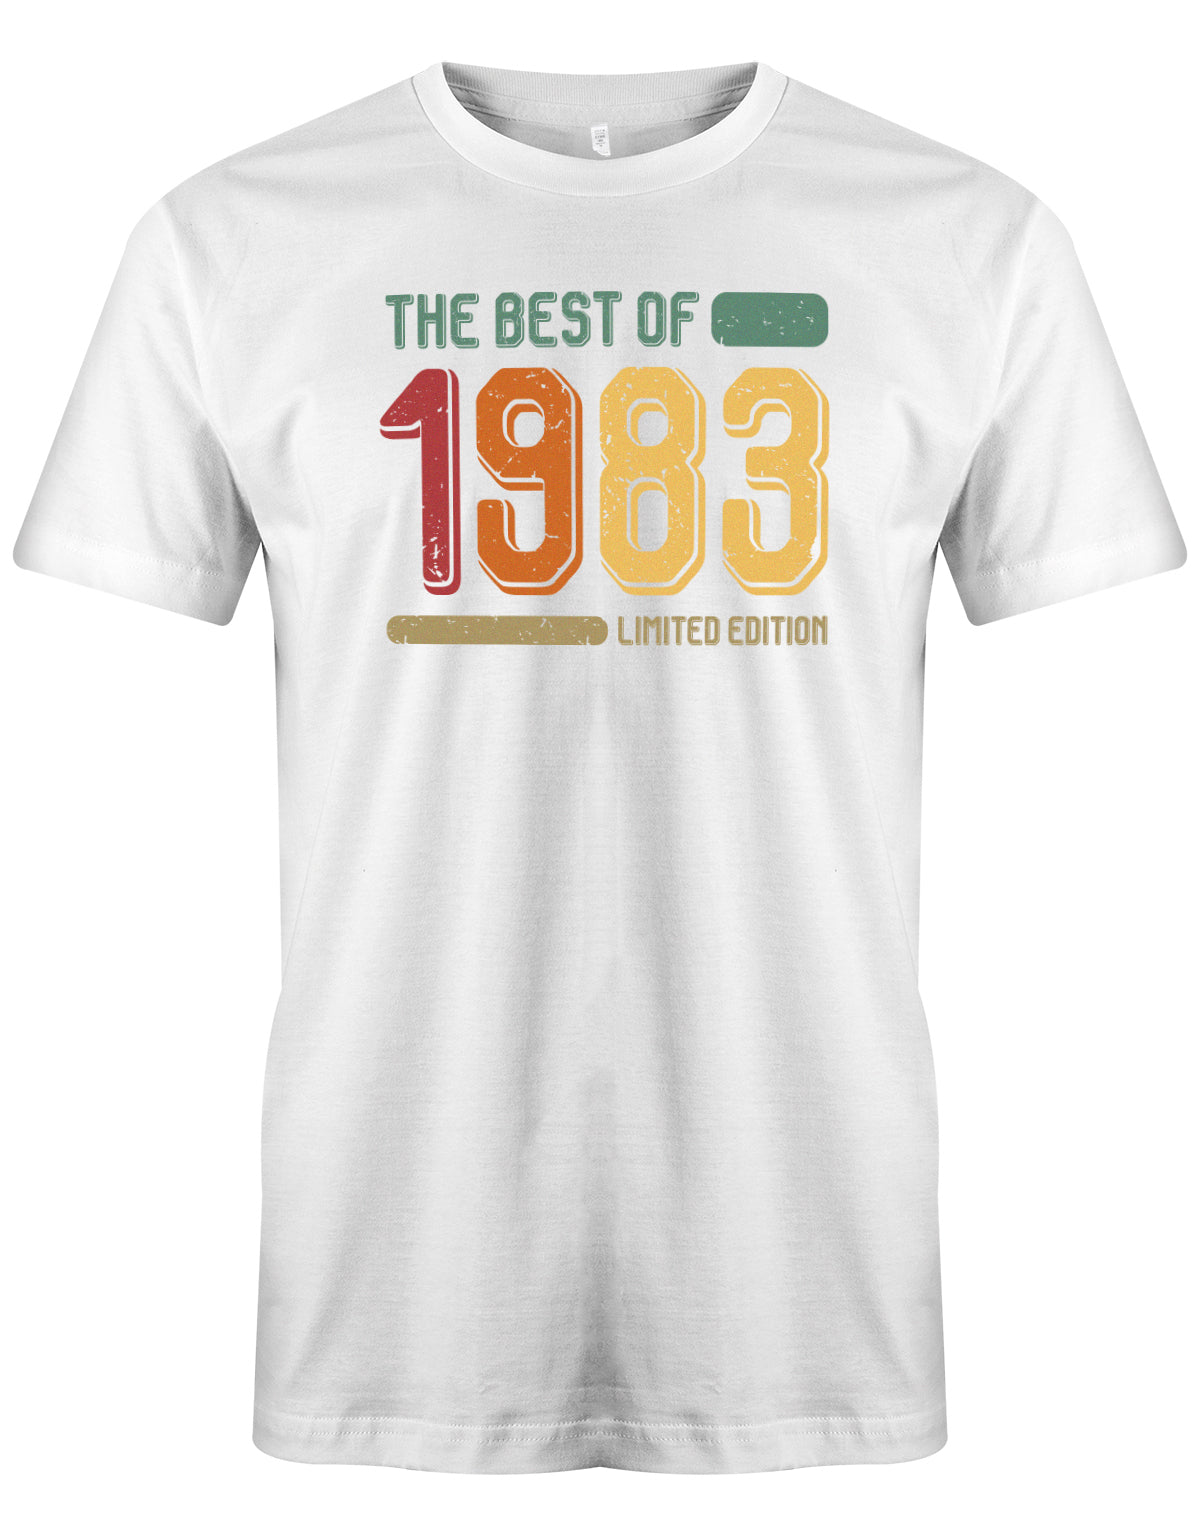 The best of 1983 Limited Edition Vintage TShirt - T-Shirt 40 Geburtstag Männer myShirtStore Weiss